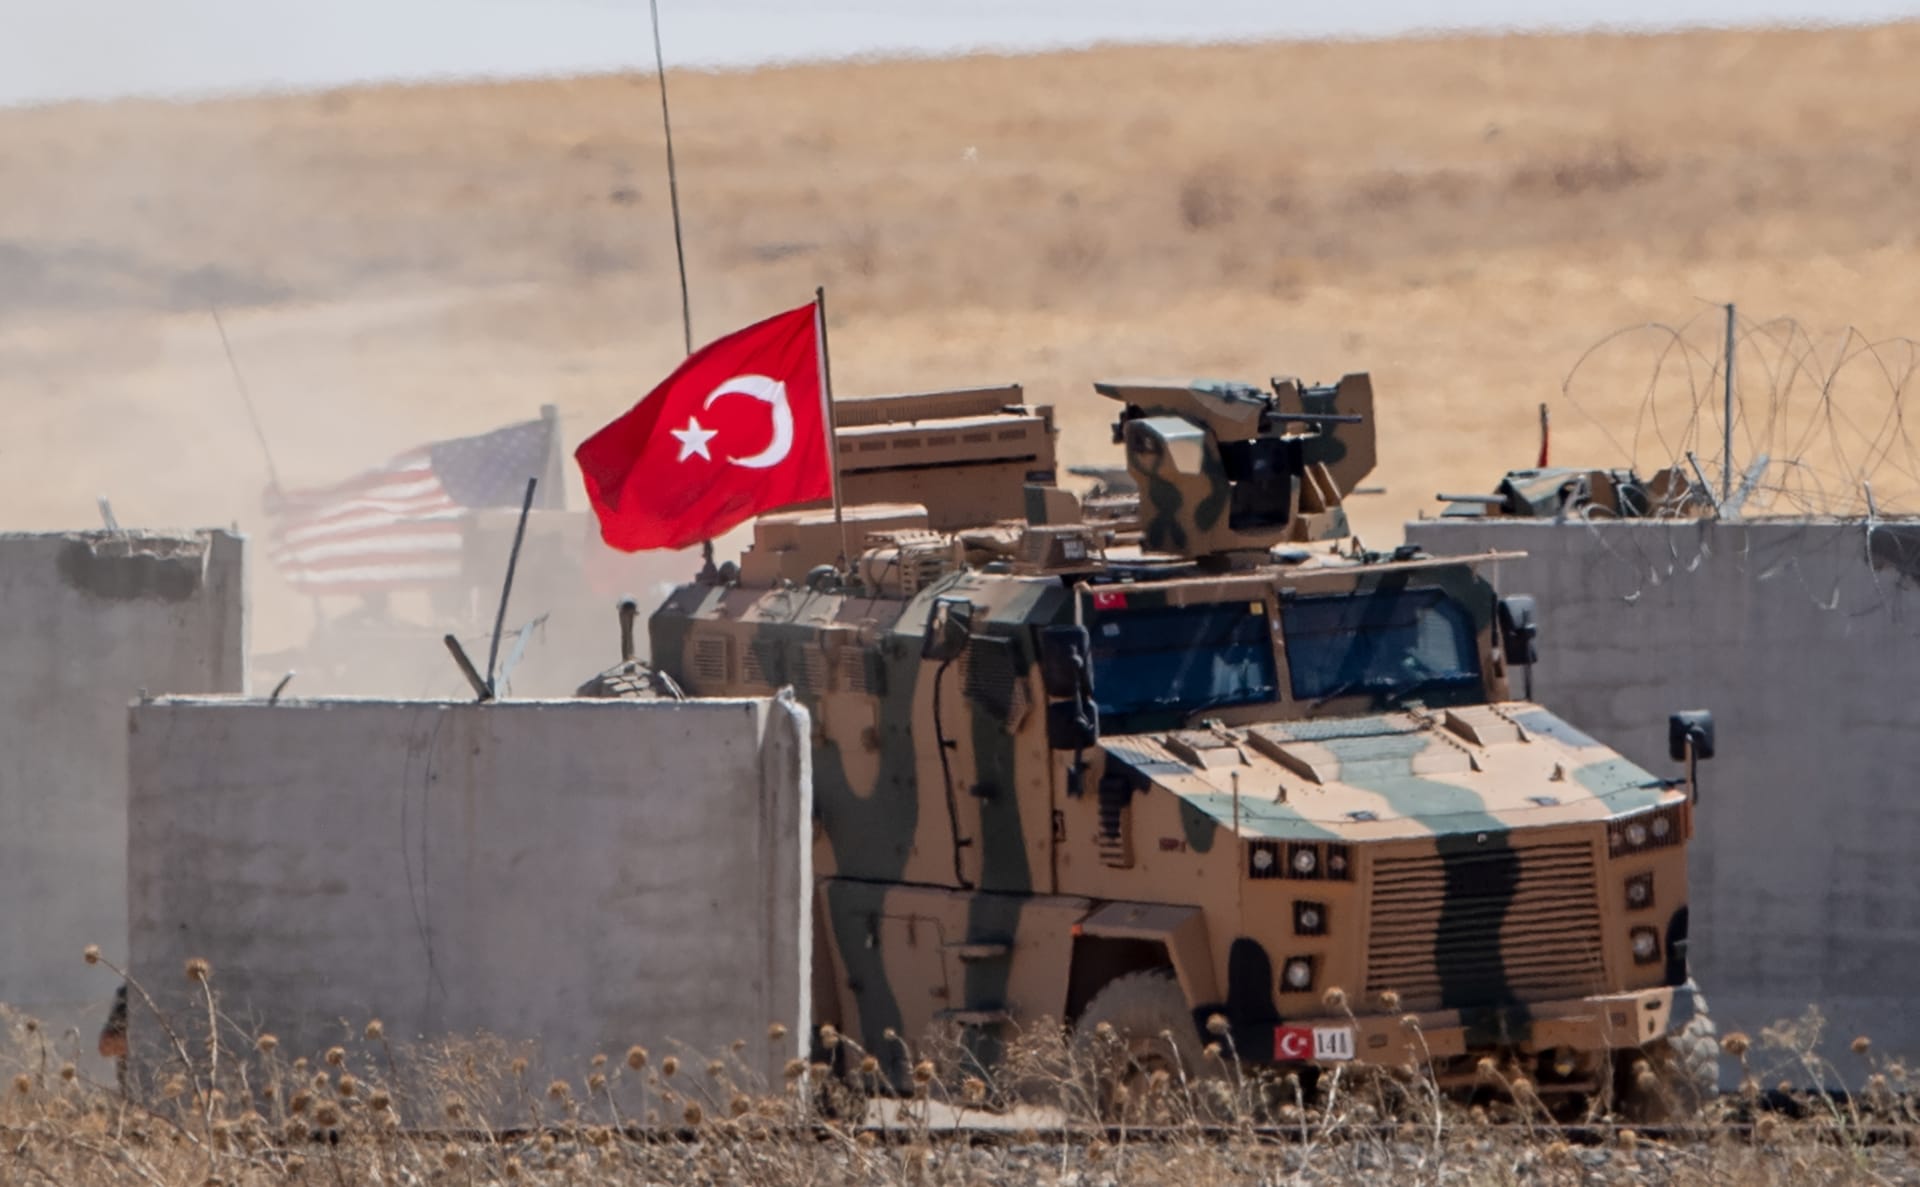 بدء أول دورية برية أمريكية تركية مشتركة لـ "المنطقة الآمنة" في سوريا